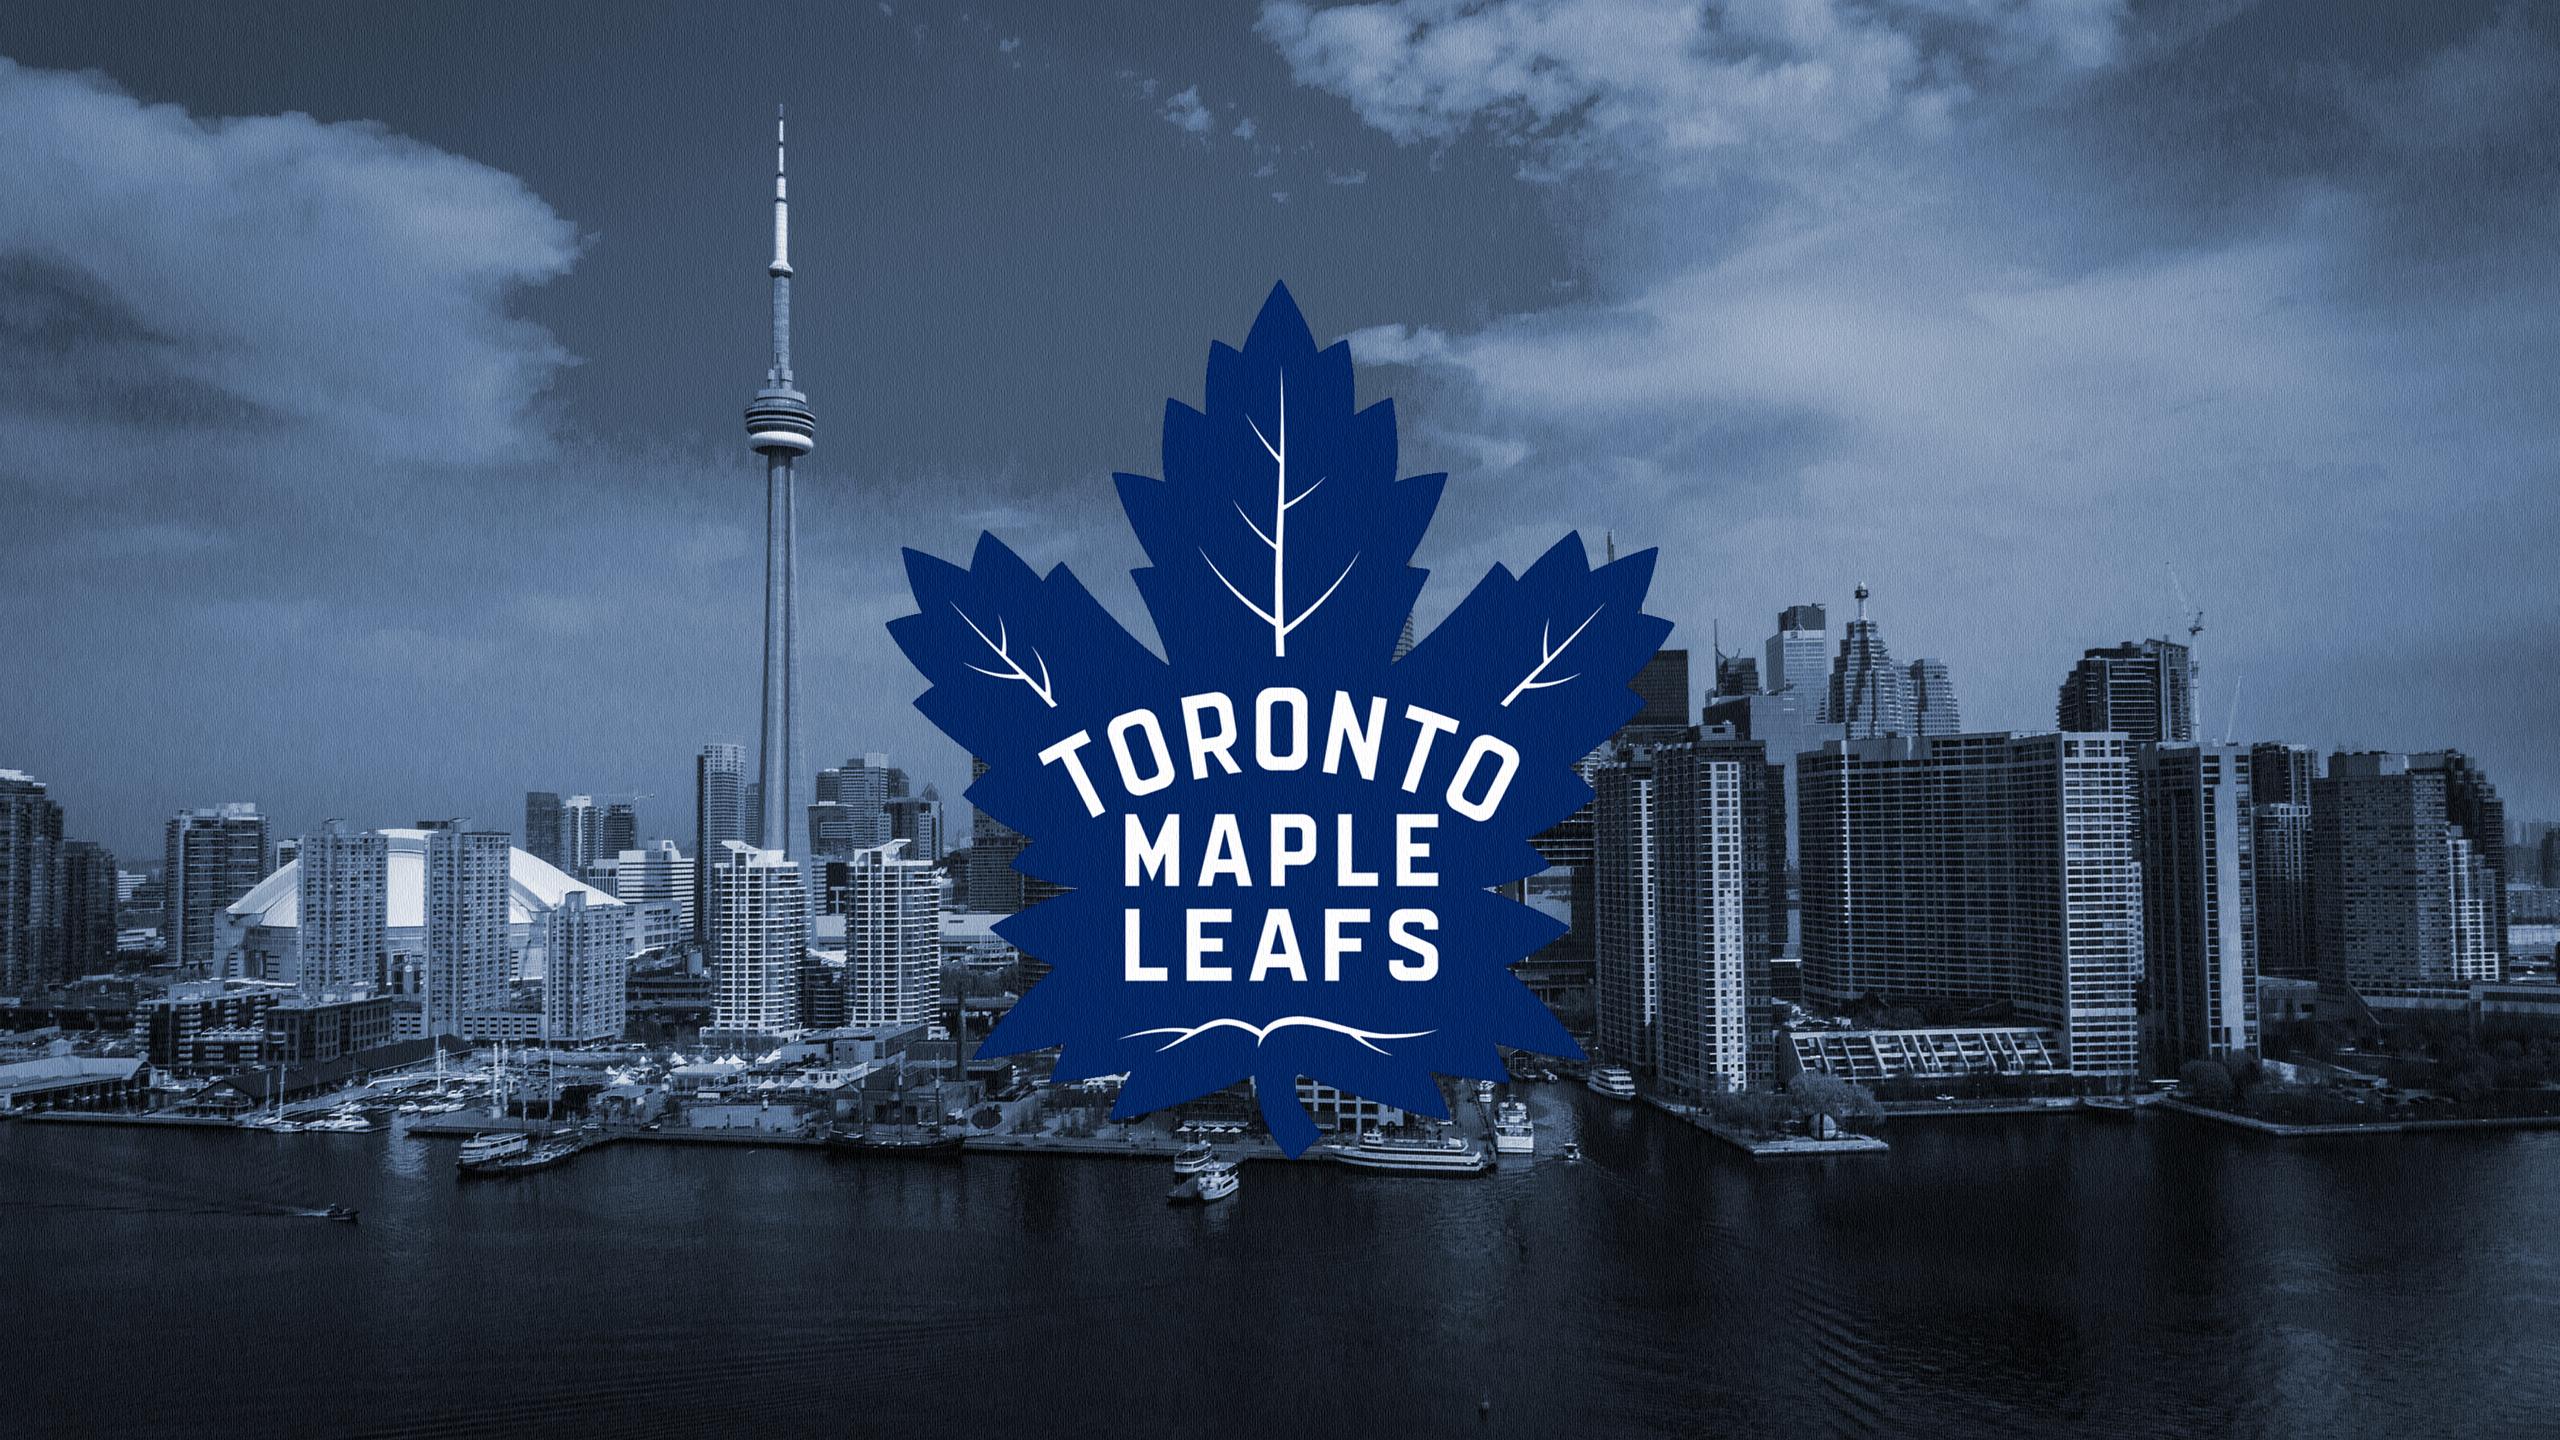 Hd Wallpaper - Toronto Maple Leafs 2017 , HD Wallpaper & Backgrounds